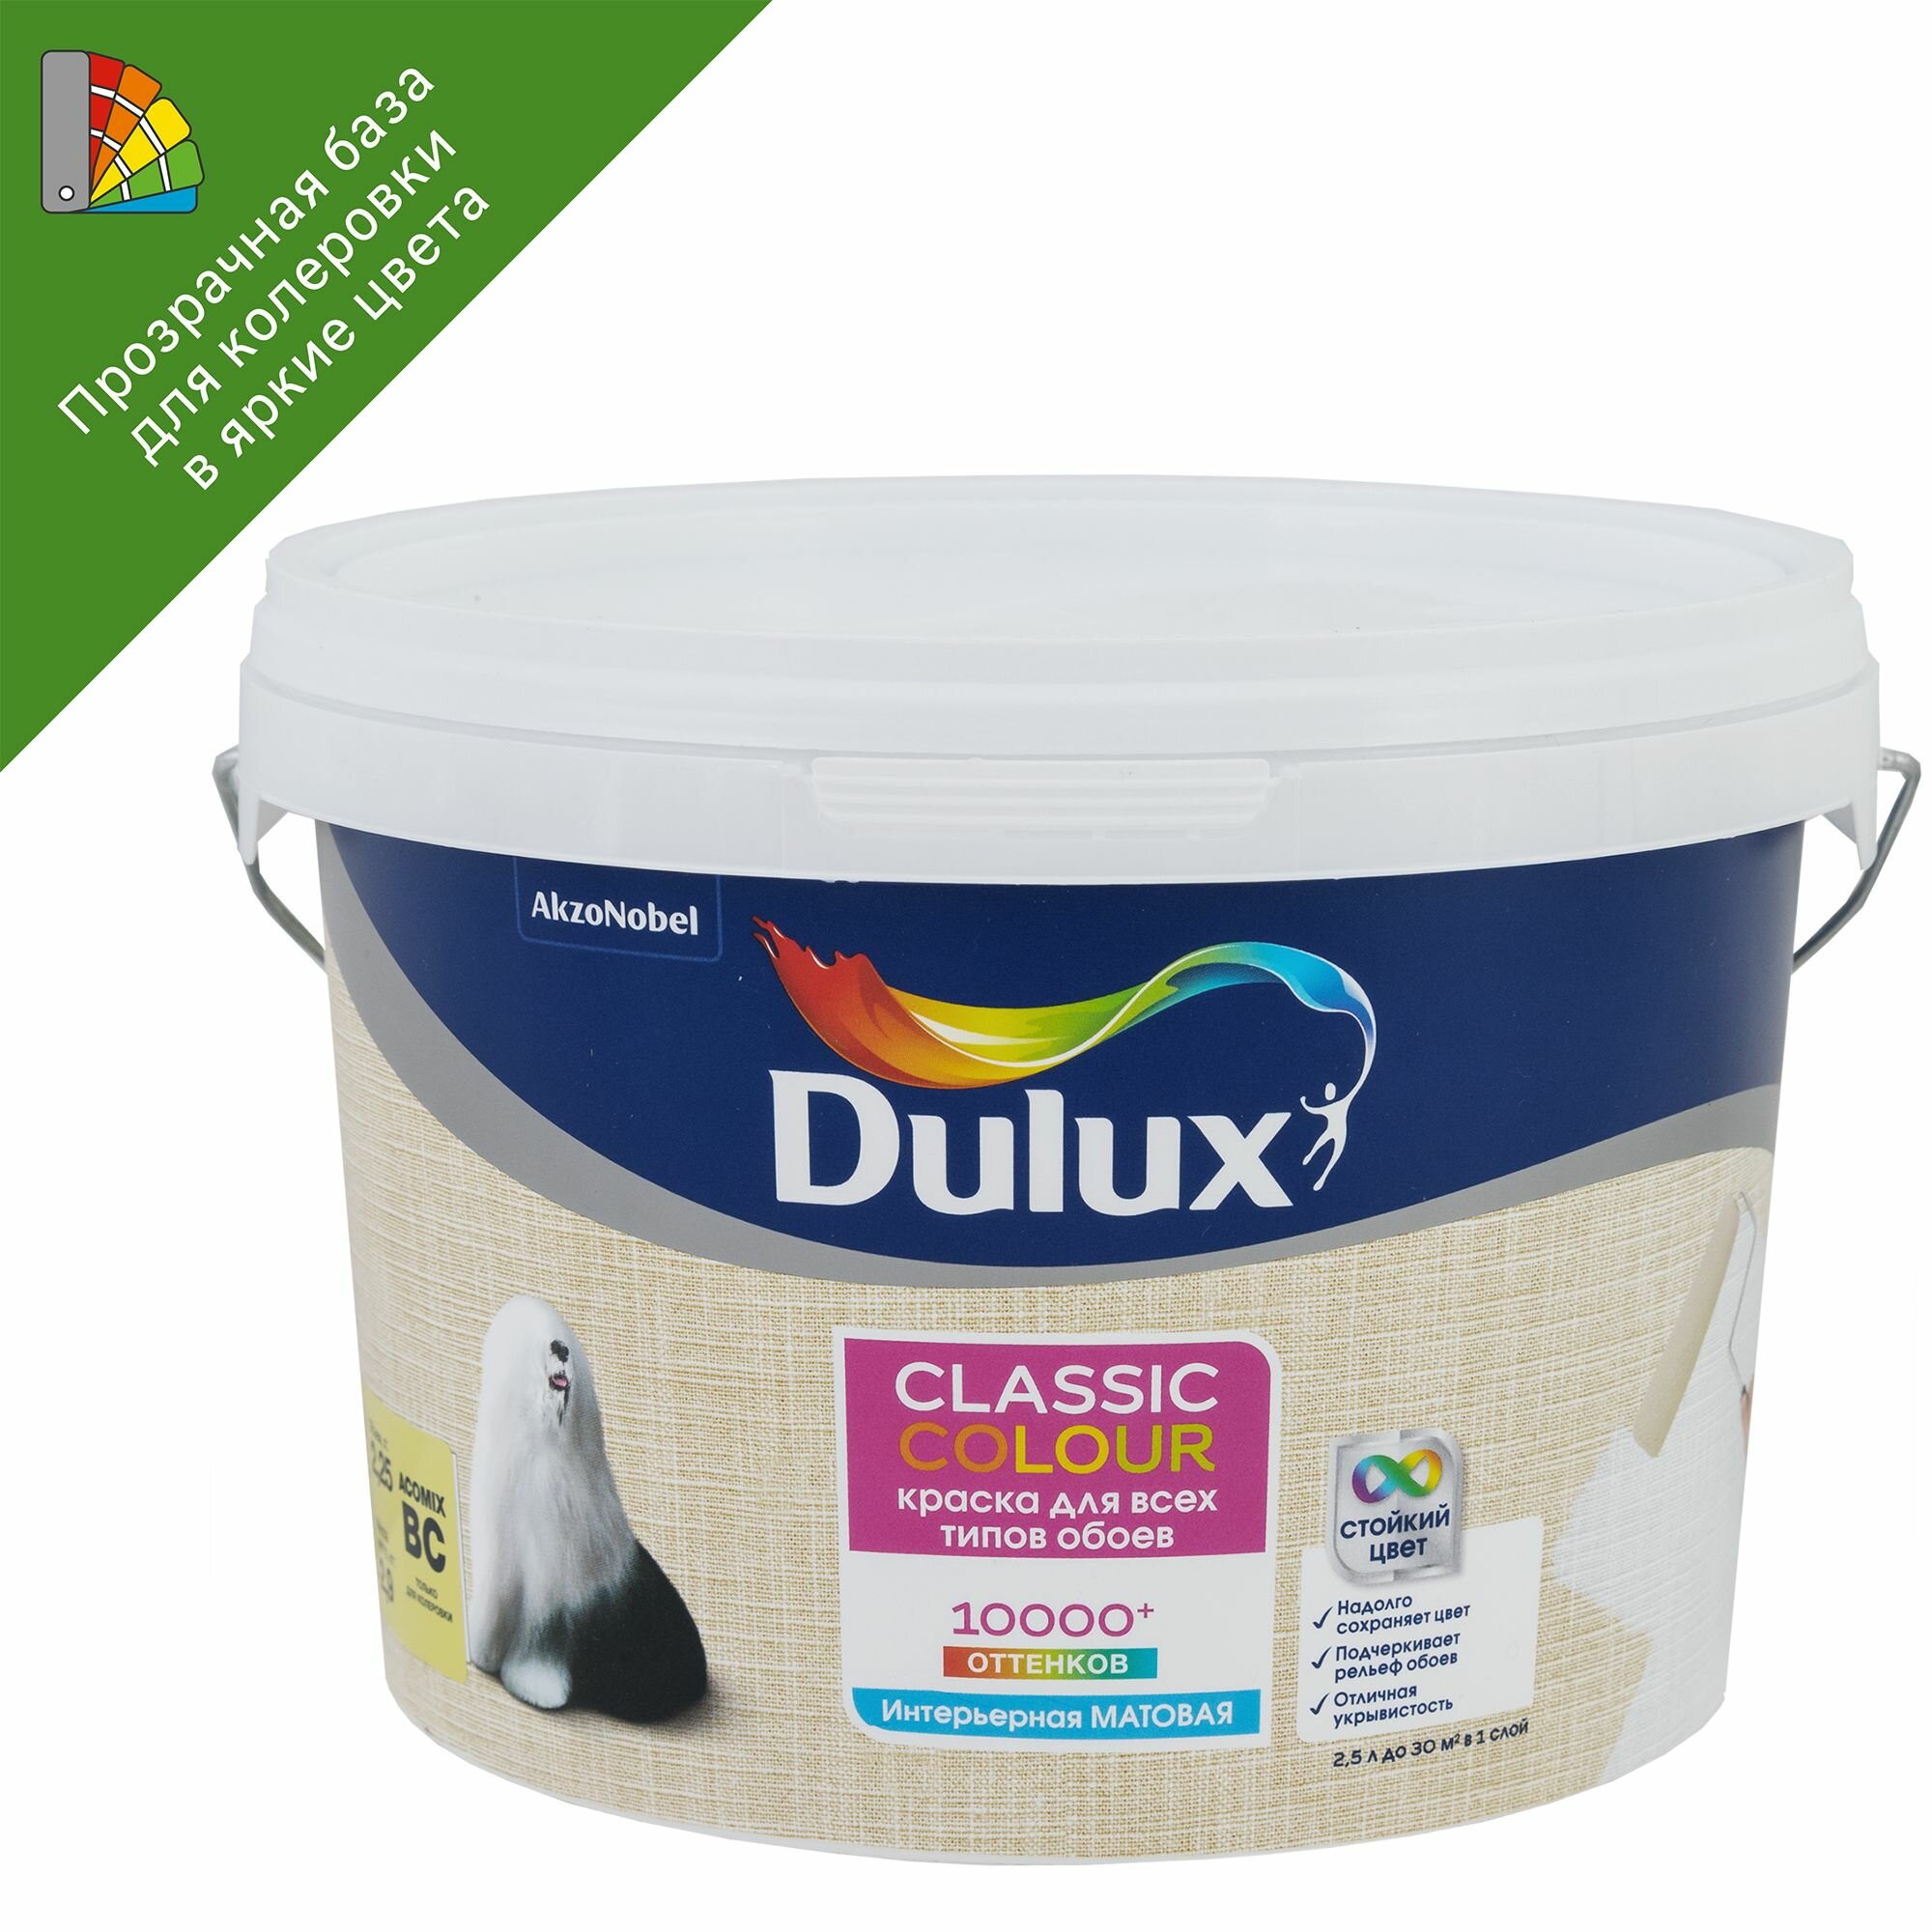      Dulux Classic Colour   B 2.25 